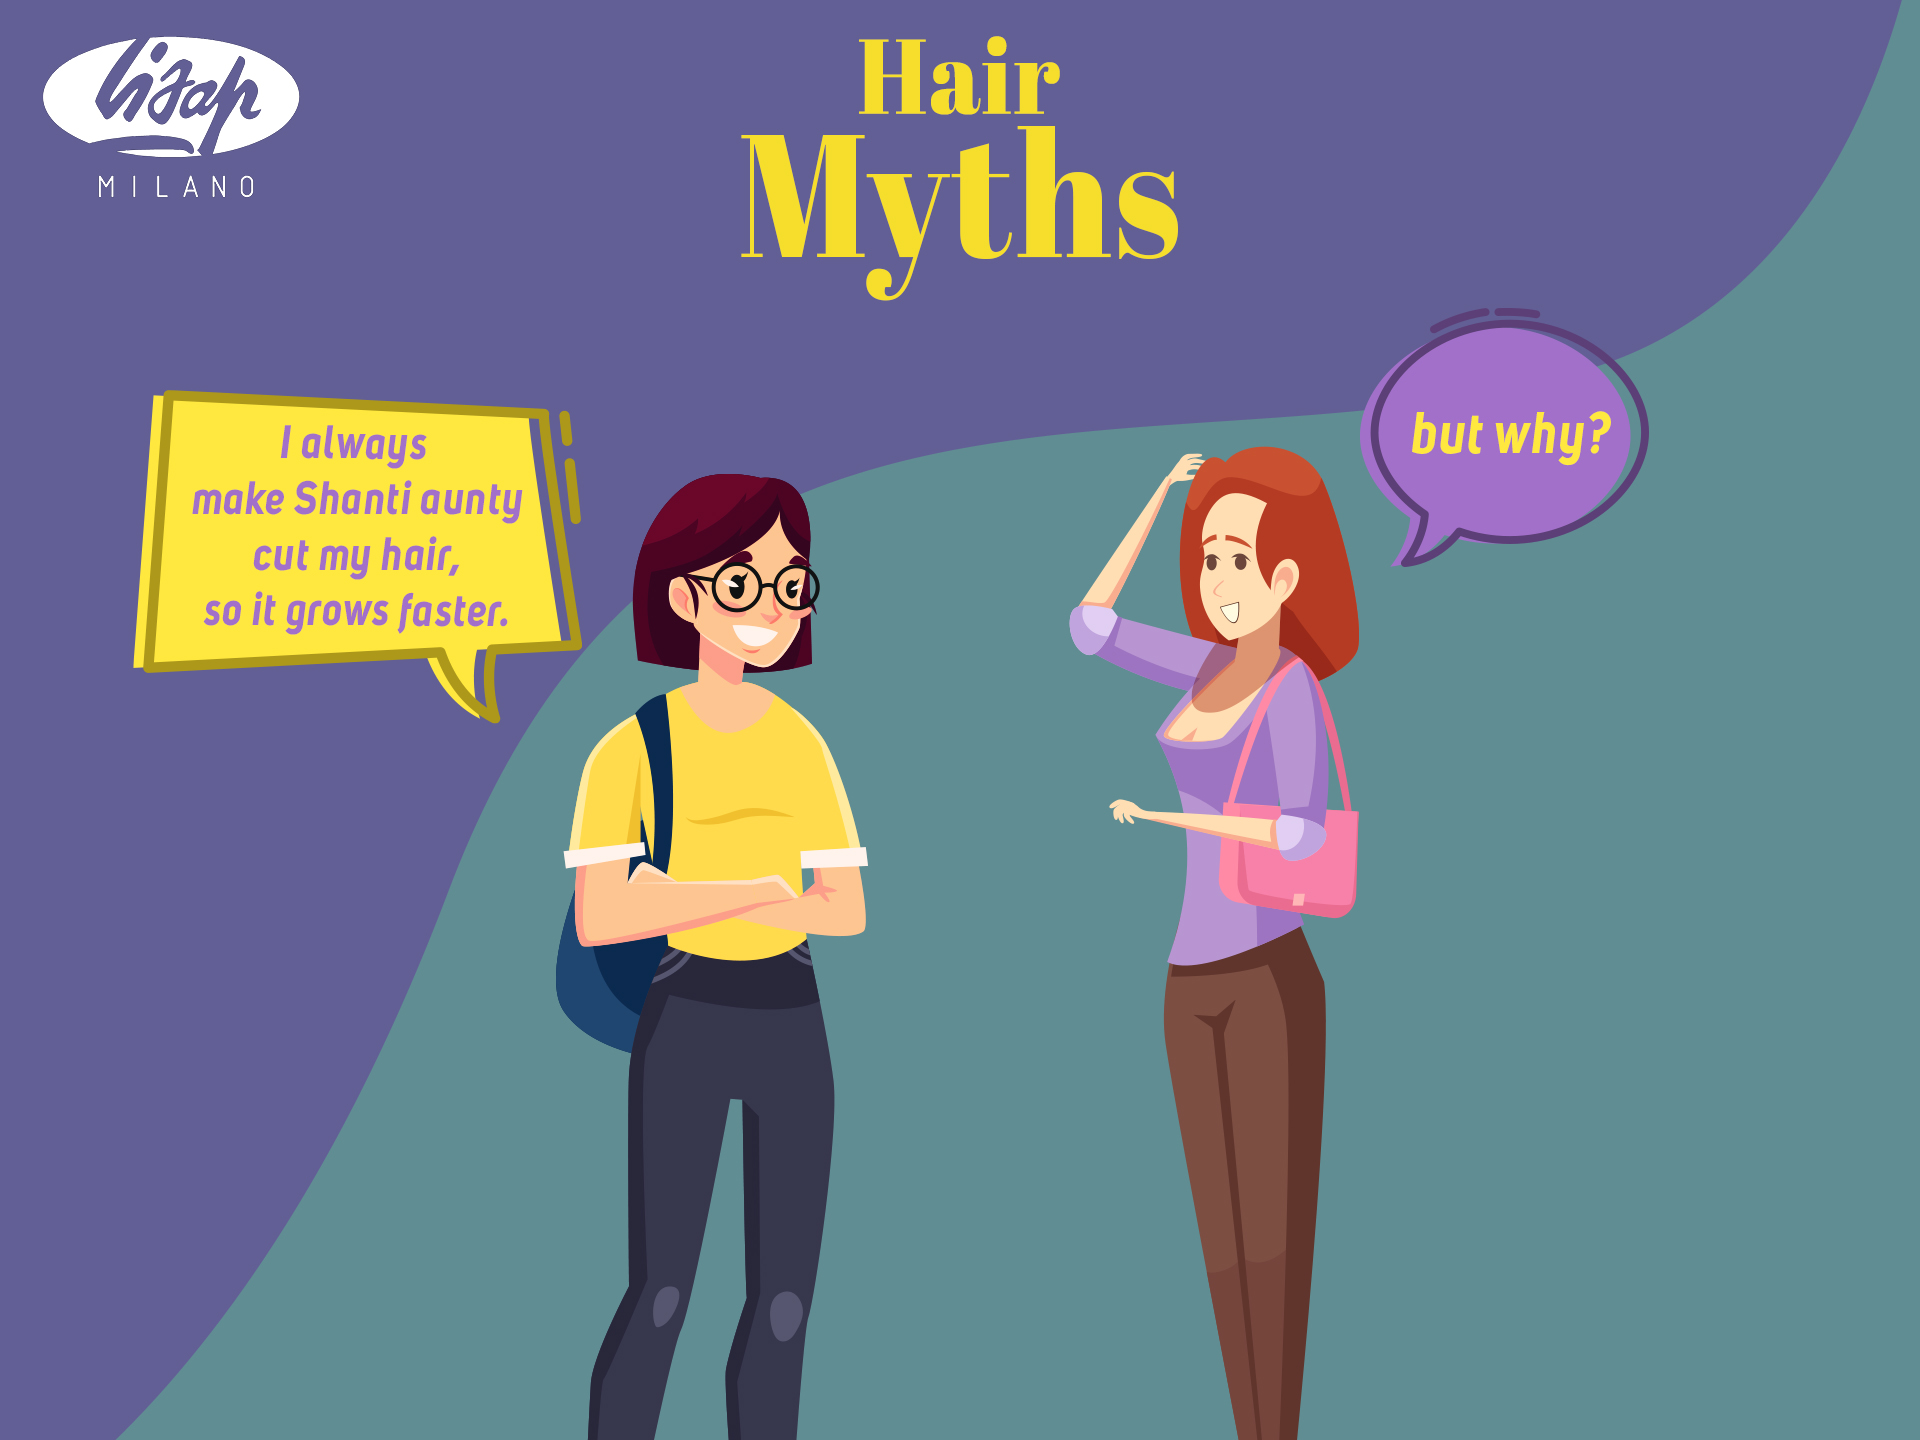 Hair care myths- BUSTED!